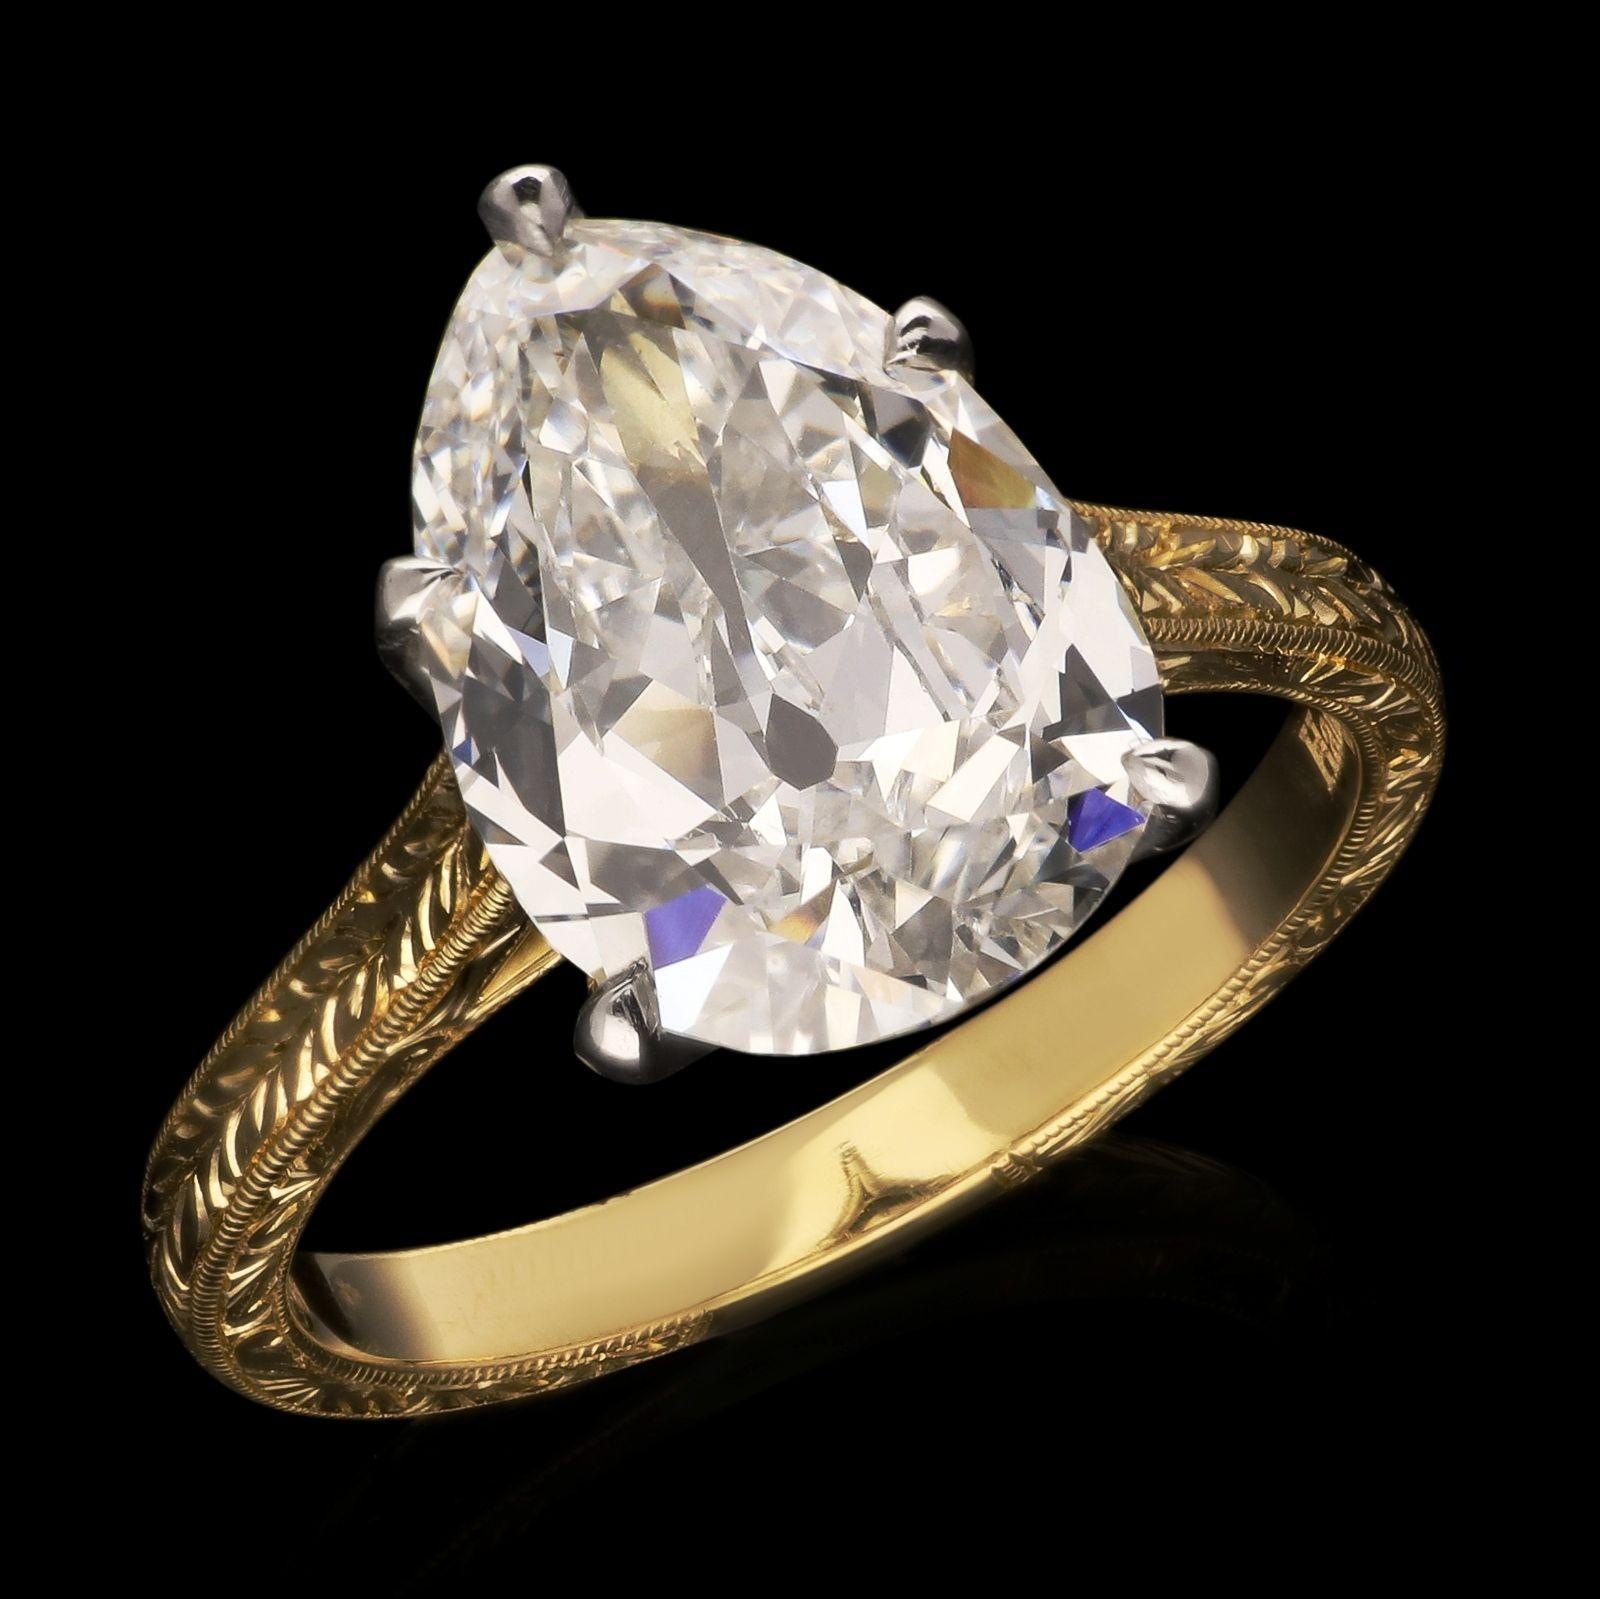 Ein atemberaubender birnenförmiger Diamant-Solitärring von Hancocks, besetzt mit einem wunderbar hellen und lebendigen birnenförmigen Diamanten im Altschliff mit einem Gewicht von 3,73 ct, Farbe G und Reinheit VVS2, in einer